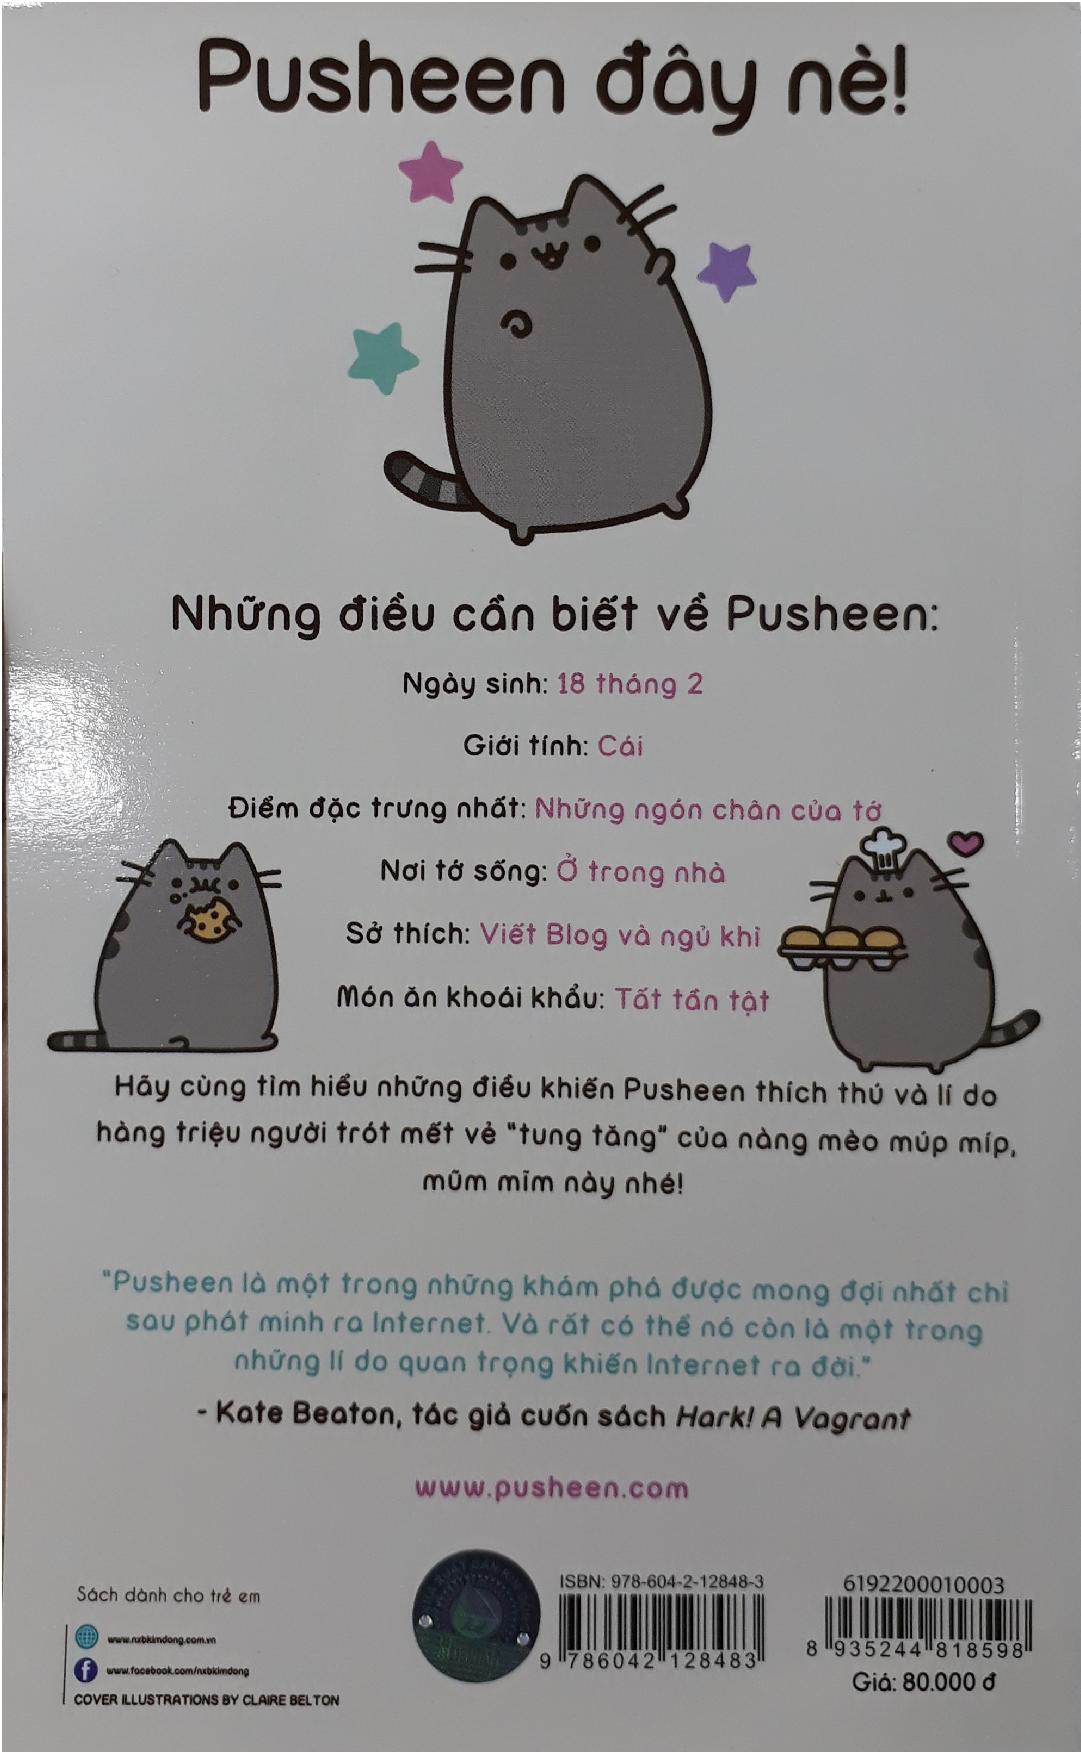 Mèo Pusheen Cute Đắp Mặt Nạ Tranh Pinterest Tổng Hợp | Pusheen cute, Pusheen  cat, Pusheen